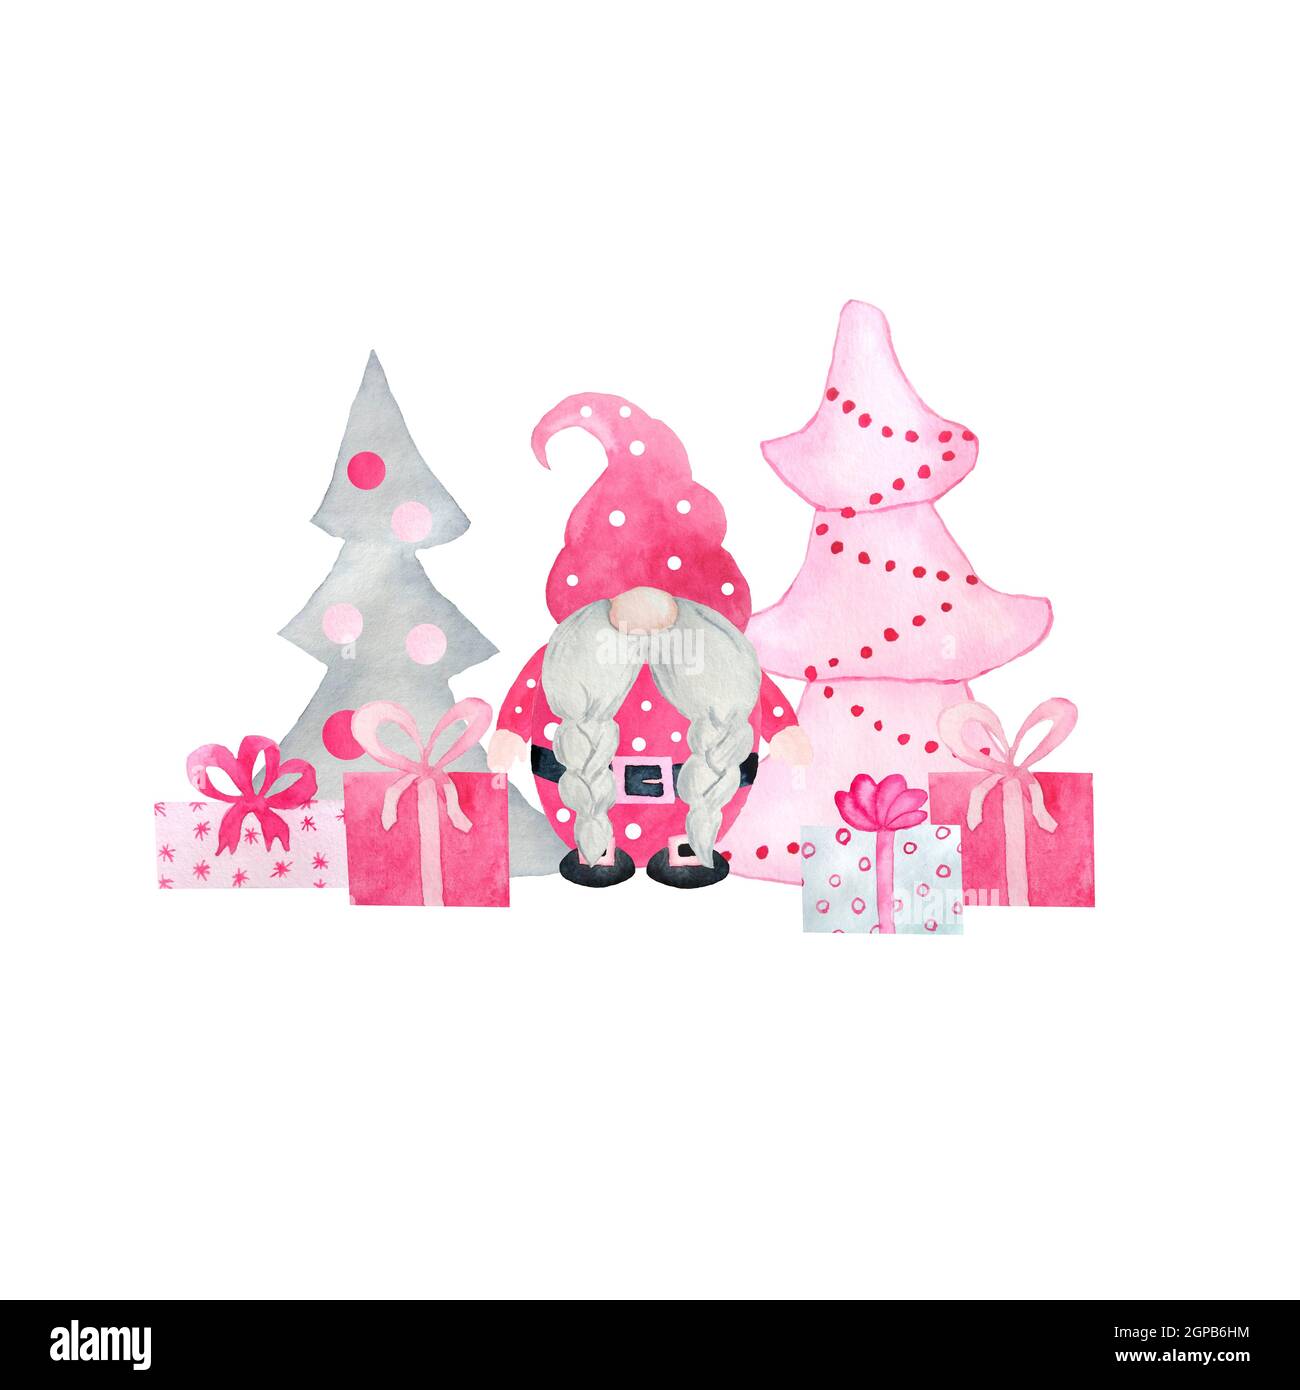 Aquarelle dessin à la main avec des gnomes de Noël roses, cadeaux de nouvel an cadeaux.pastel gnomes nordiques avec chritsmas flocons de neige arbre, mignon personnage de dessin animé hiver design Banque D'Images